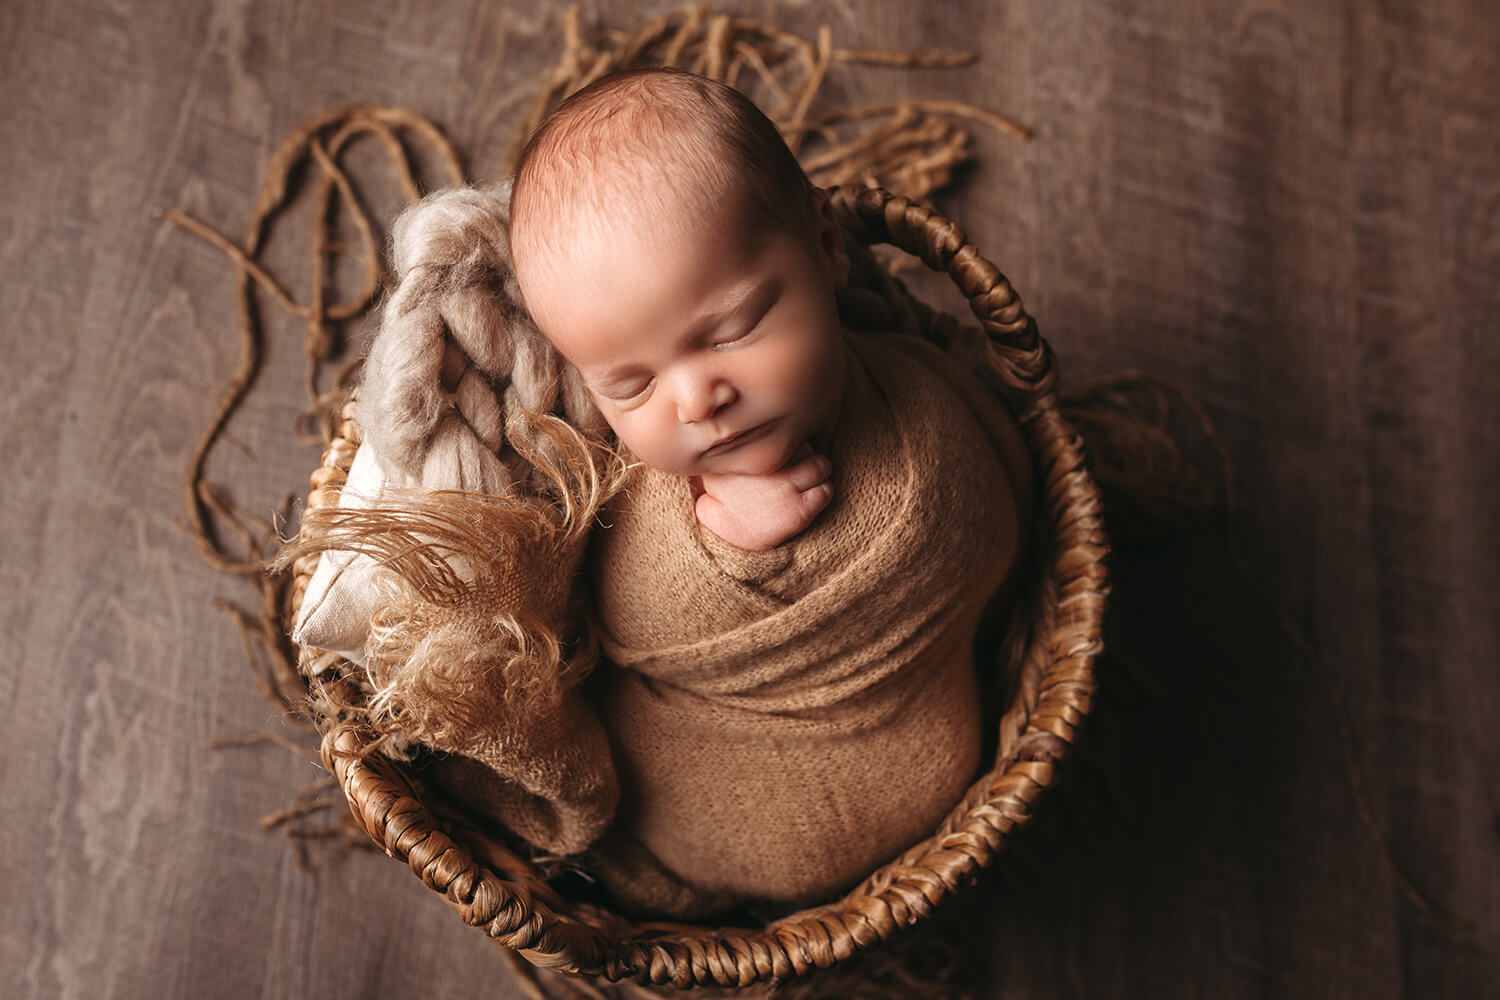 Studio photo of a newborn in a basket in studio.